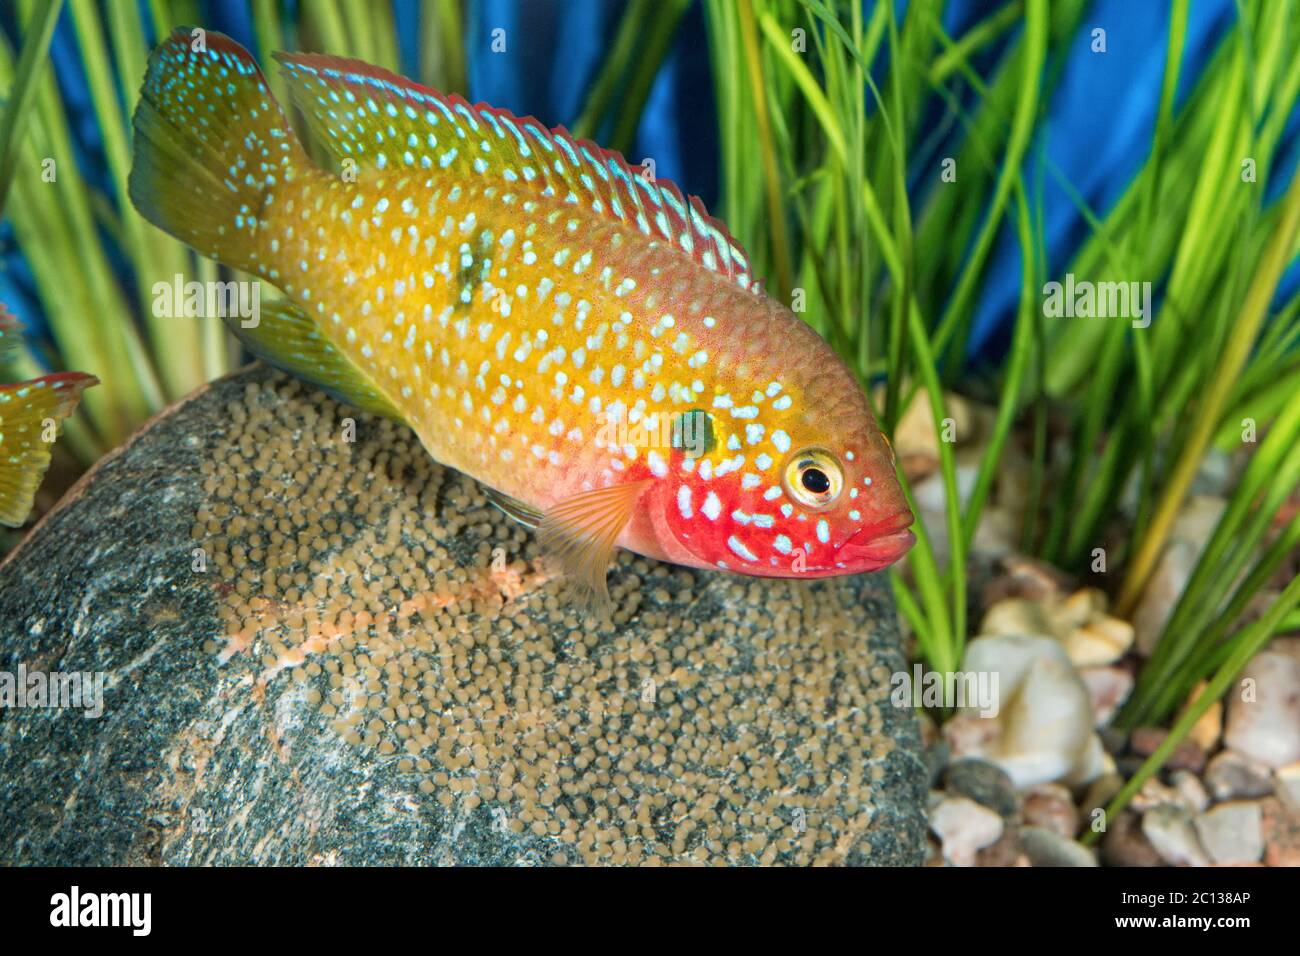 Portrait of cichlid fish (Hemichromis sp.) in aquarium Stock Photo